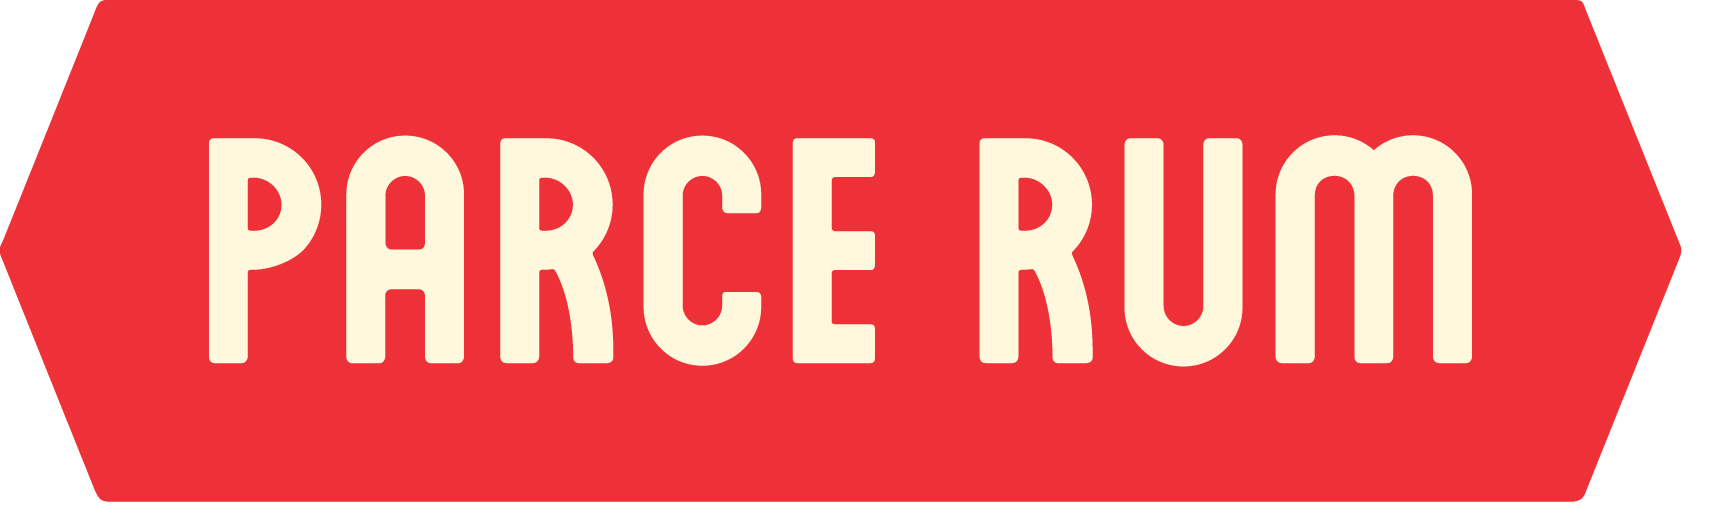 PARCE_logo (4).jpg